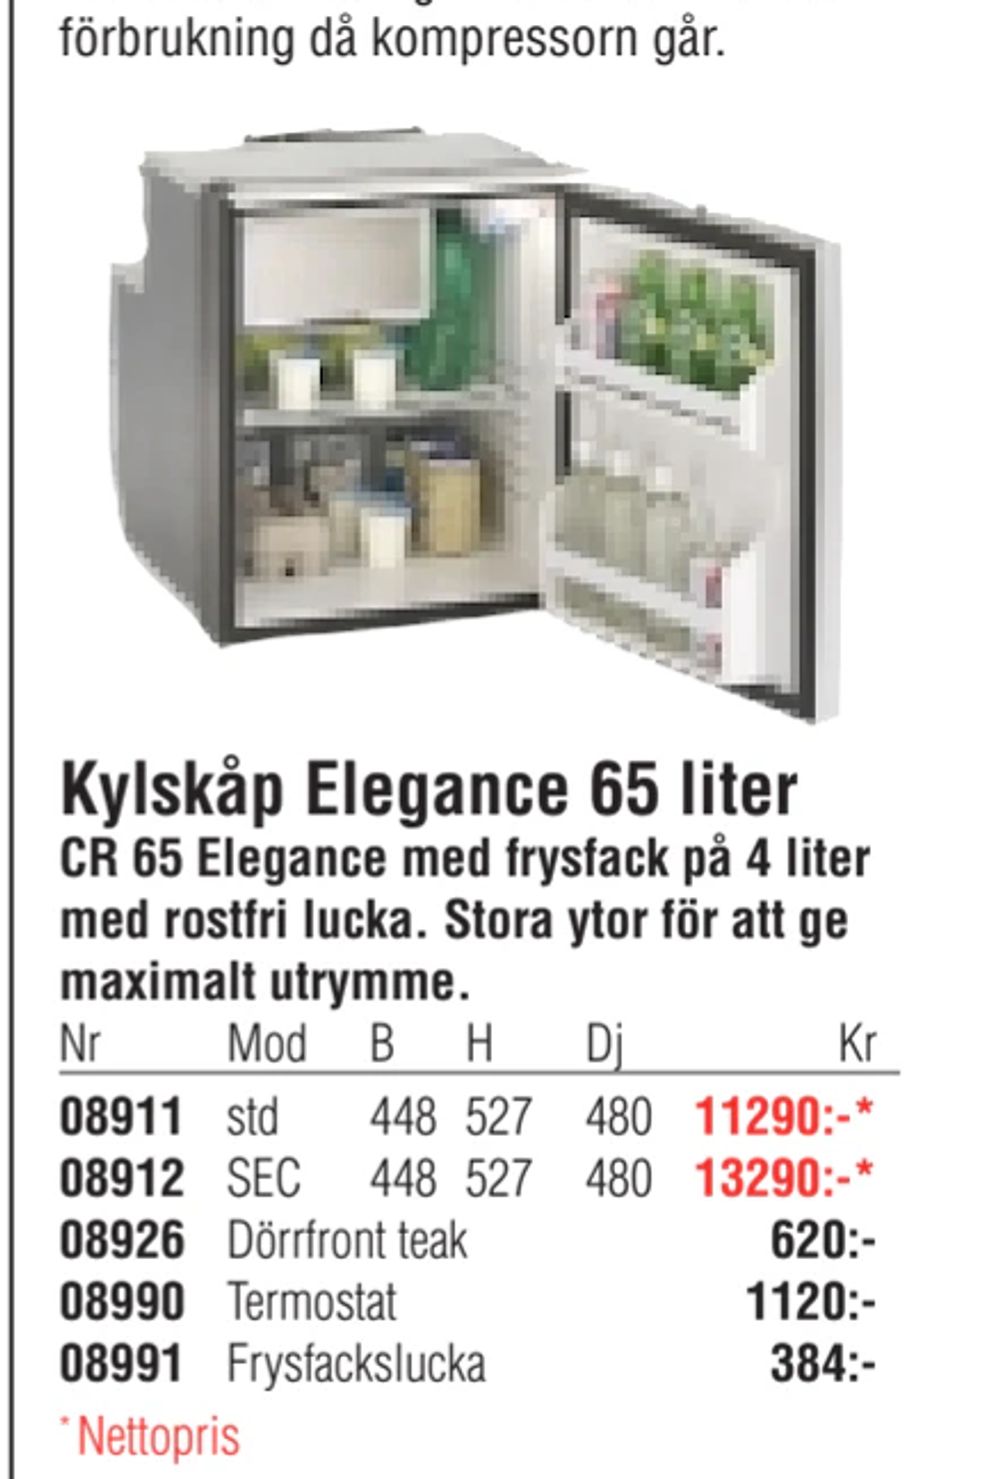 Erbjudanden på Kylskåp Elegance 65 liter från Erlandsons Brygga för 384 kr